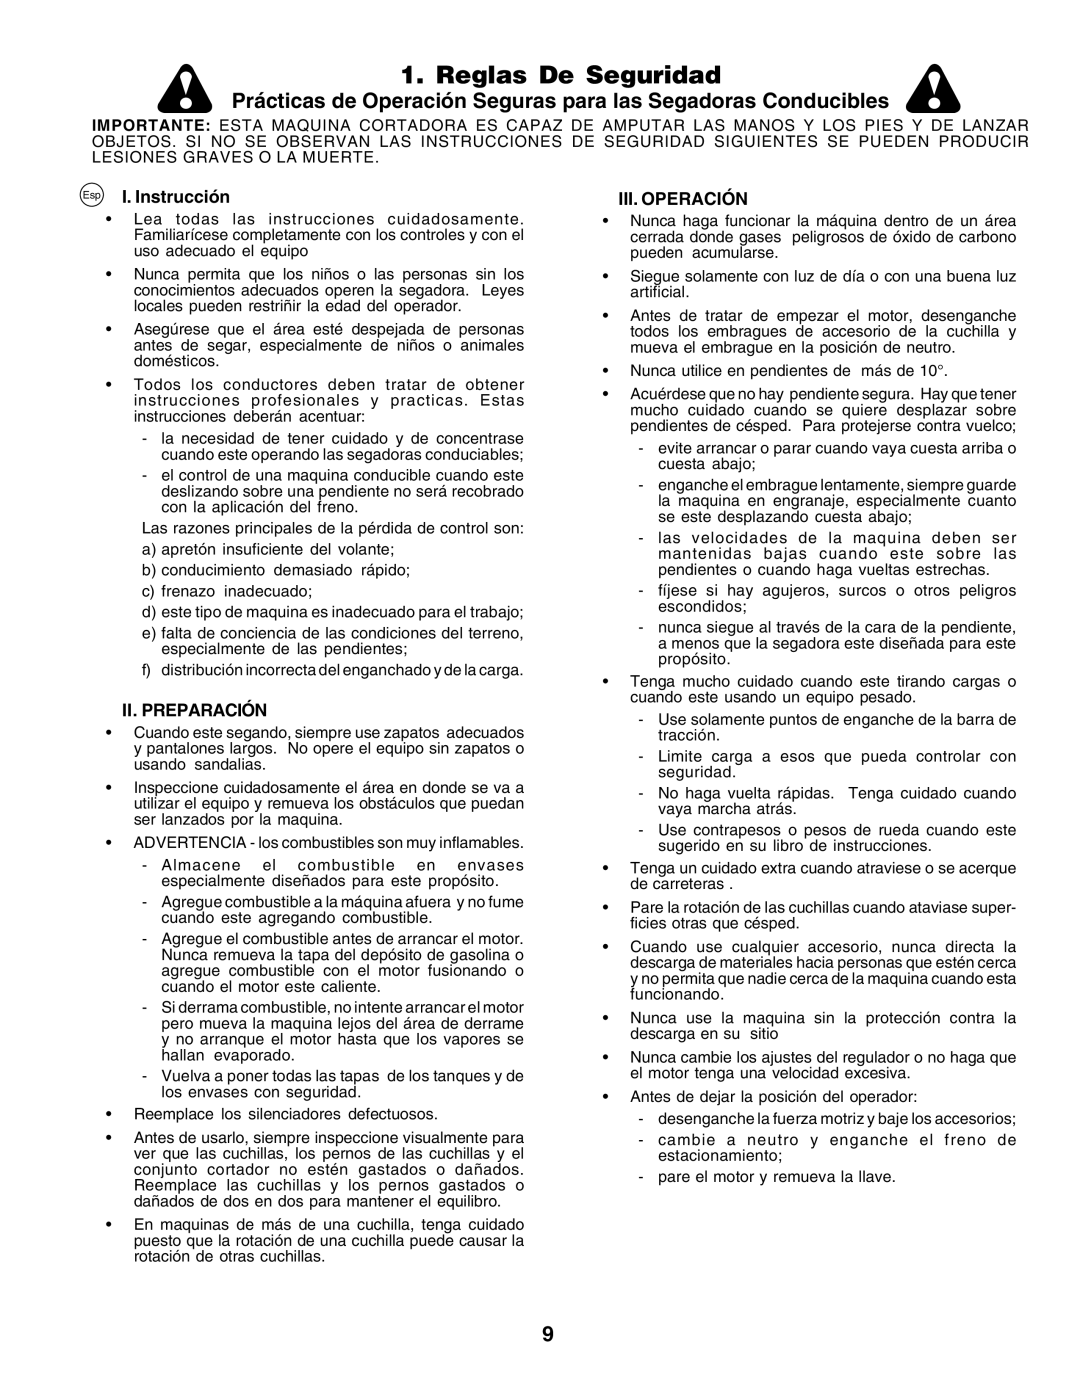 Husqvarna LT125 Reglas De Seguridad, Prácticas de Operación Seguras para las Segadoras Conducibles, I. Instrucción 